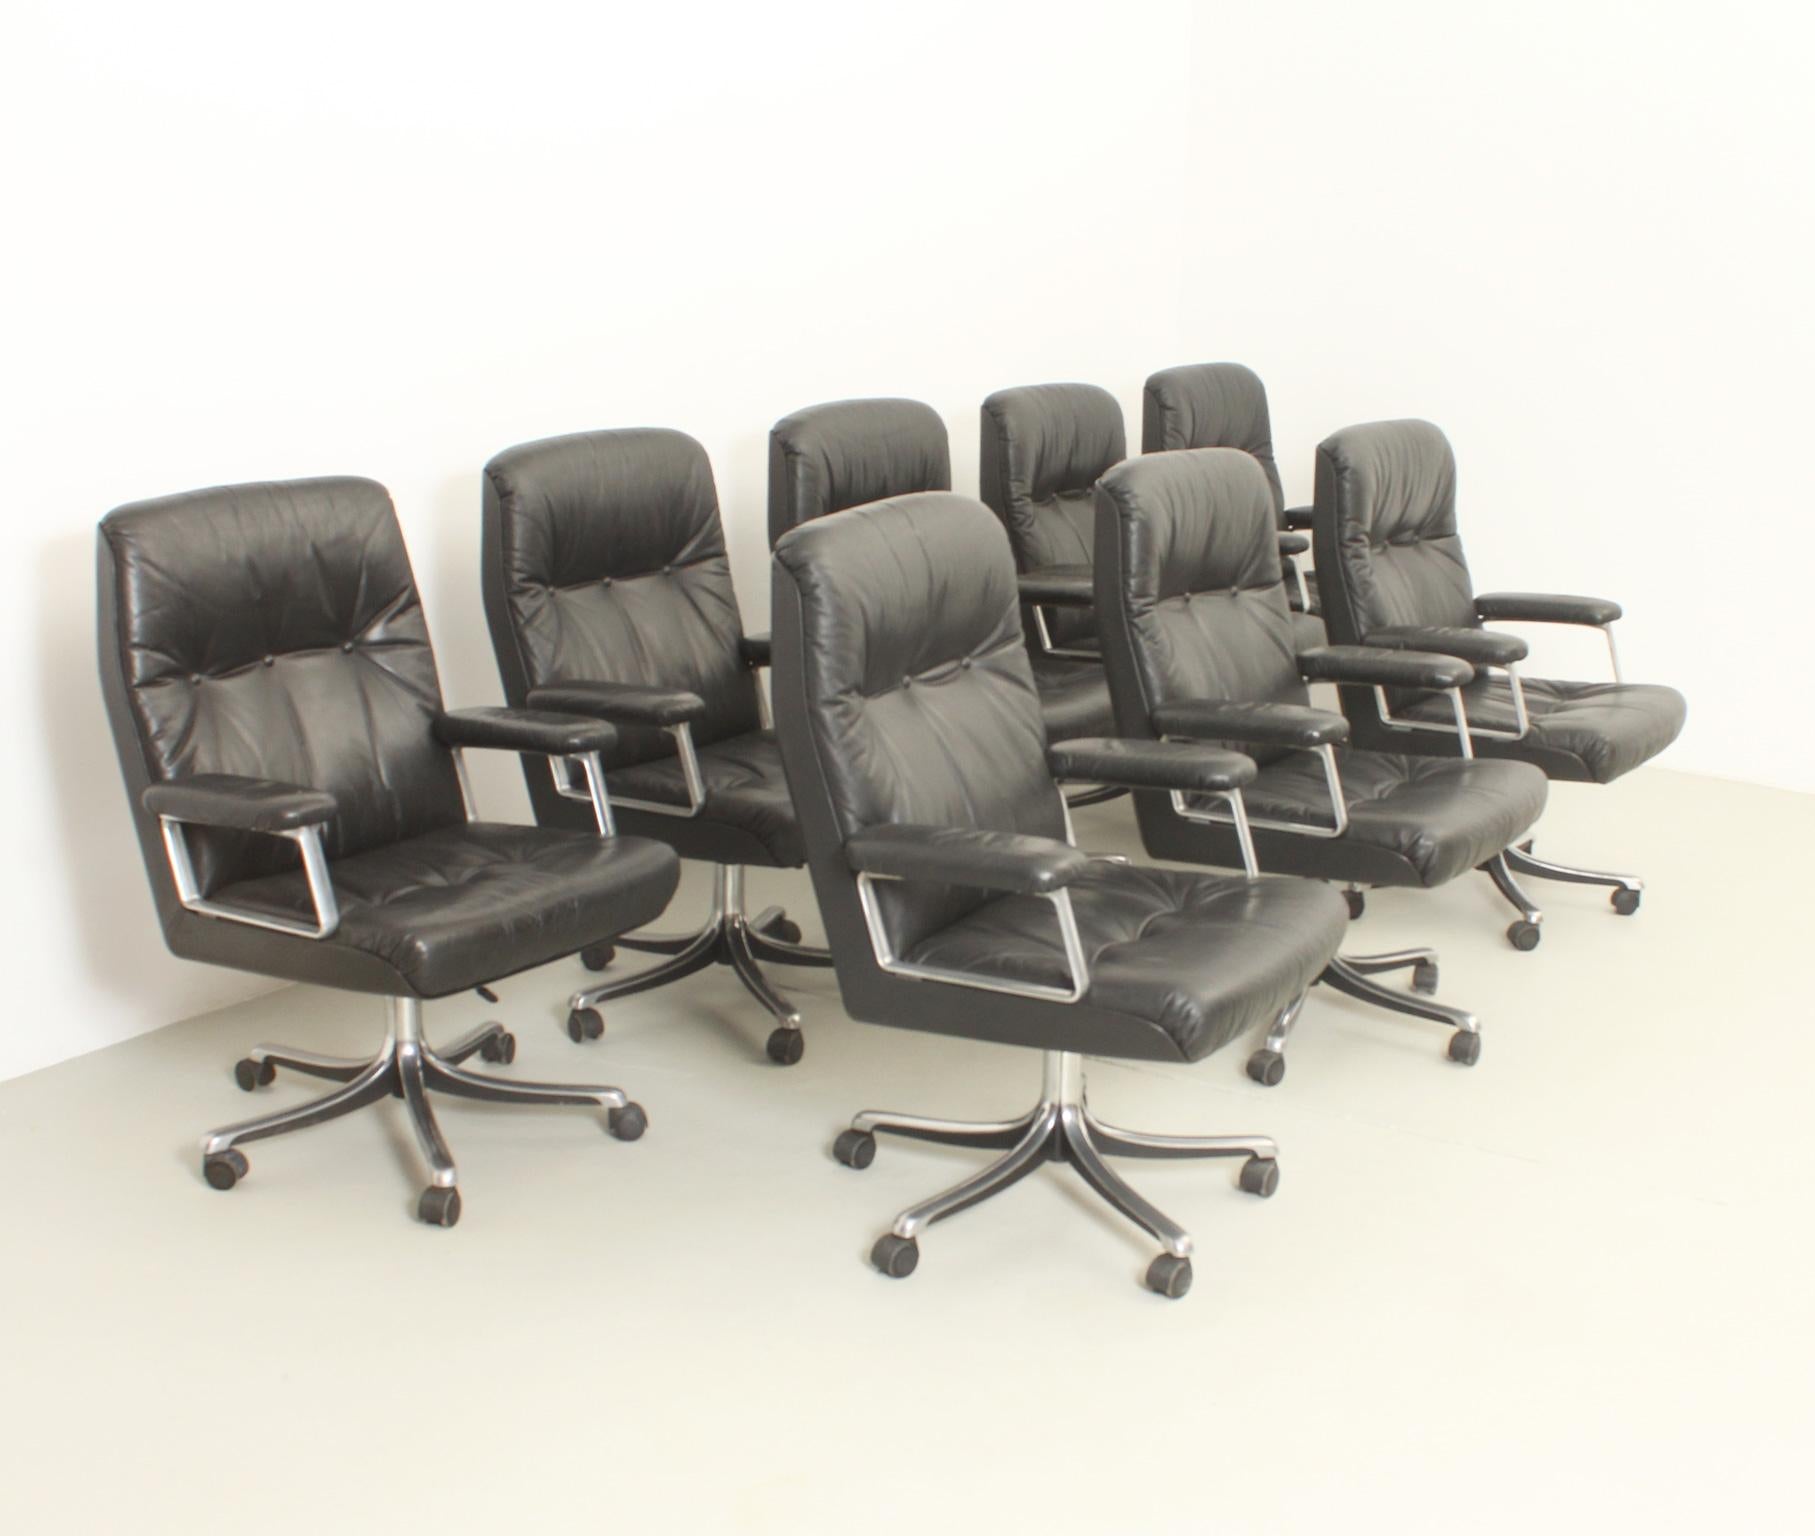 Ensemble de huit chaises de bureau conçues en 1966-1976 par Osvaldo Borsani pour Tecno, Italie. Fonte d'aluminium avec bases chromées et revêtement en cuir noir d'origine. Base pivotante avec hauteur réglable et roulettes d'origine. Il s'agit de la